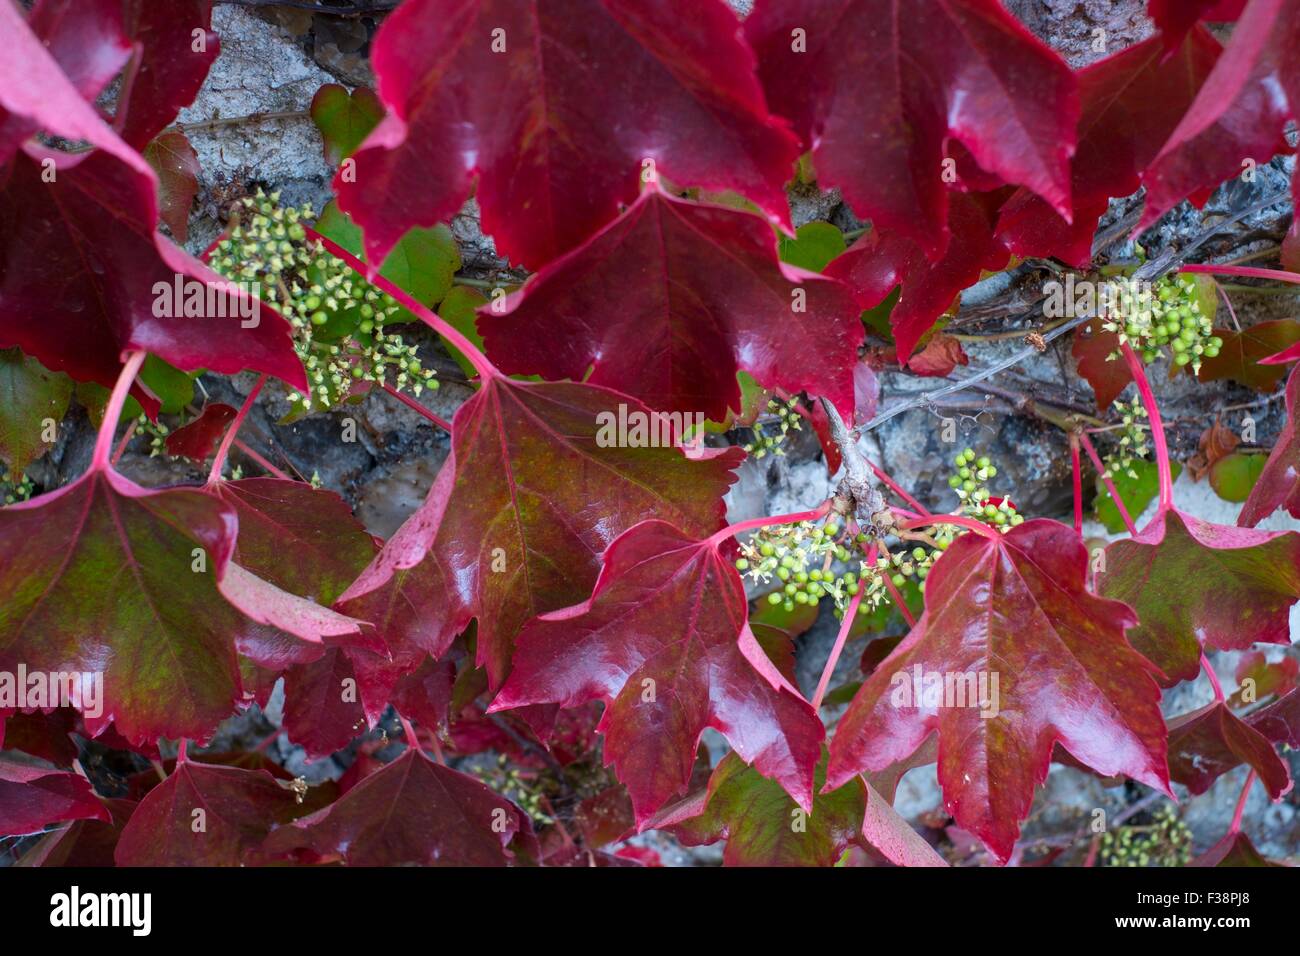 La hiedra de Boston - Parthenocissus tricuspidata, follaje se pone roja y mostrando las flores. Foto de stock